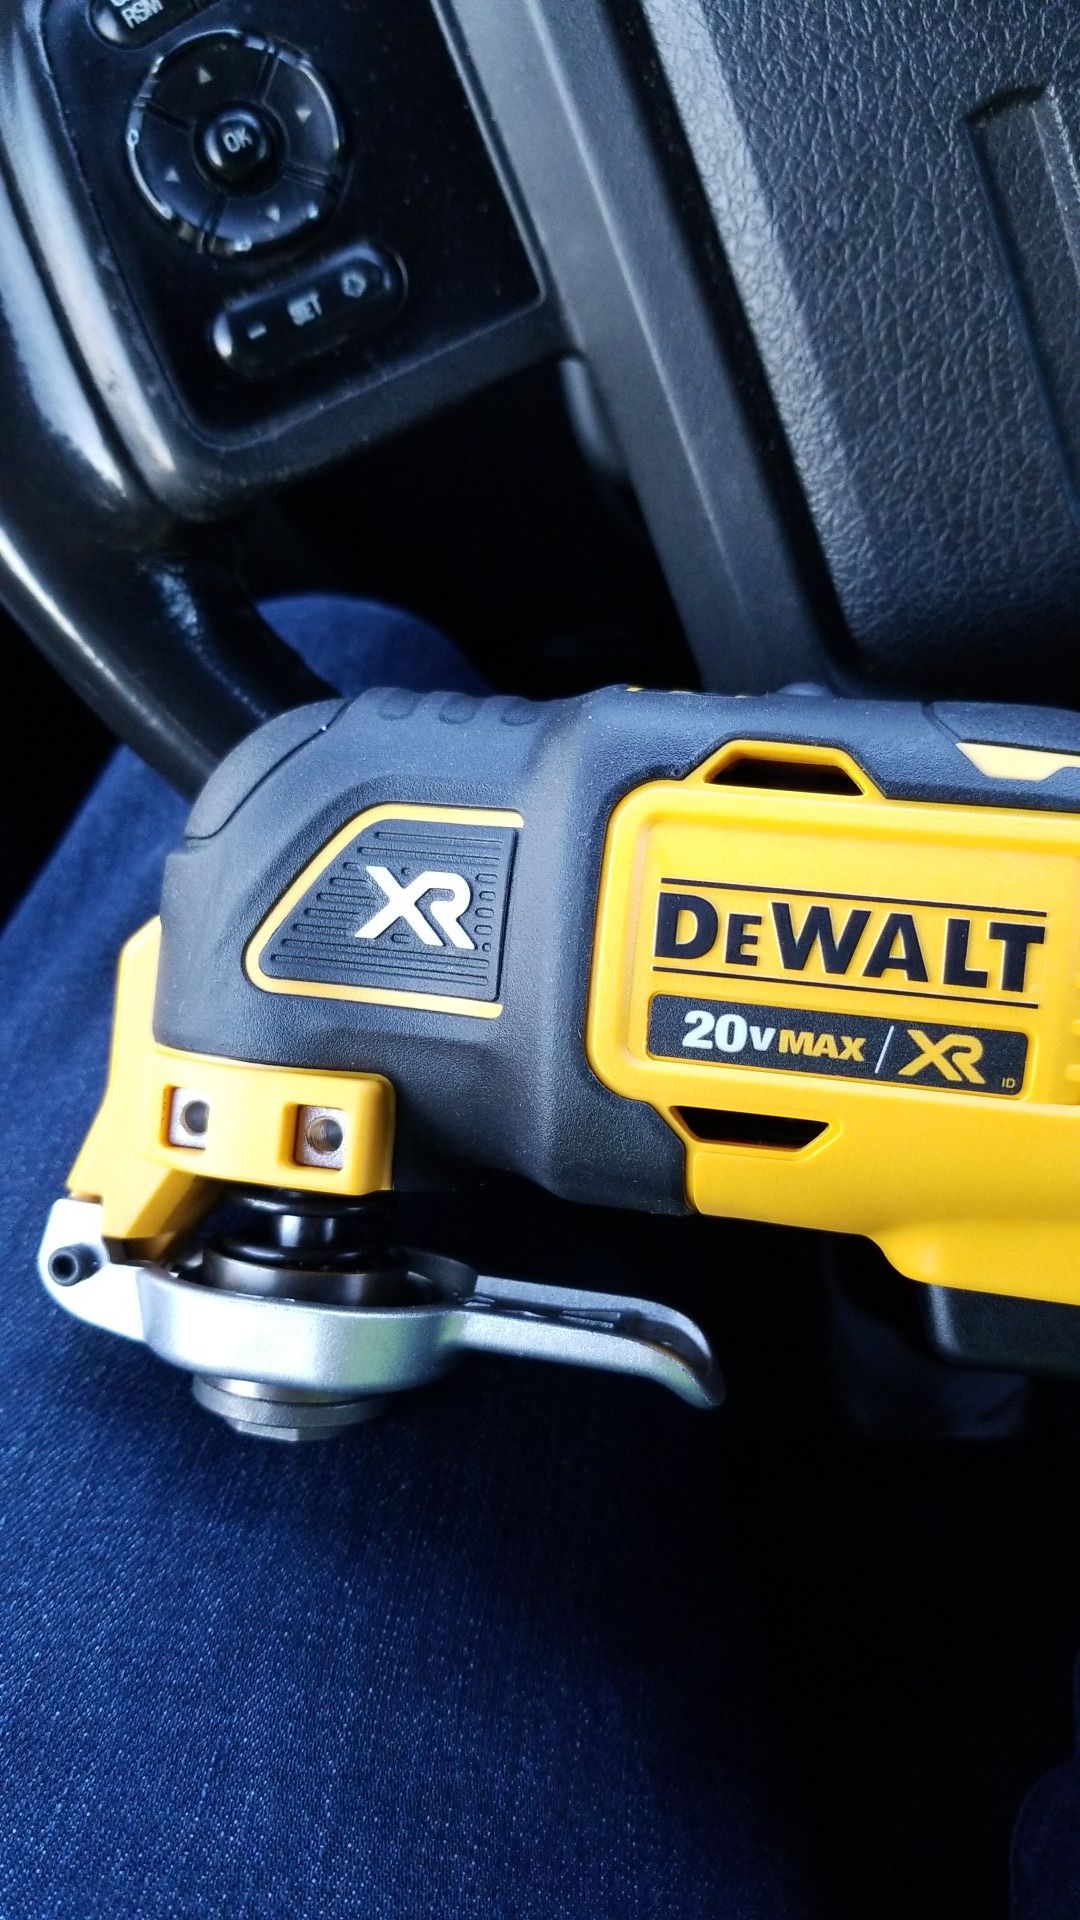 DeWalt multi-tool